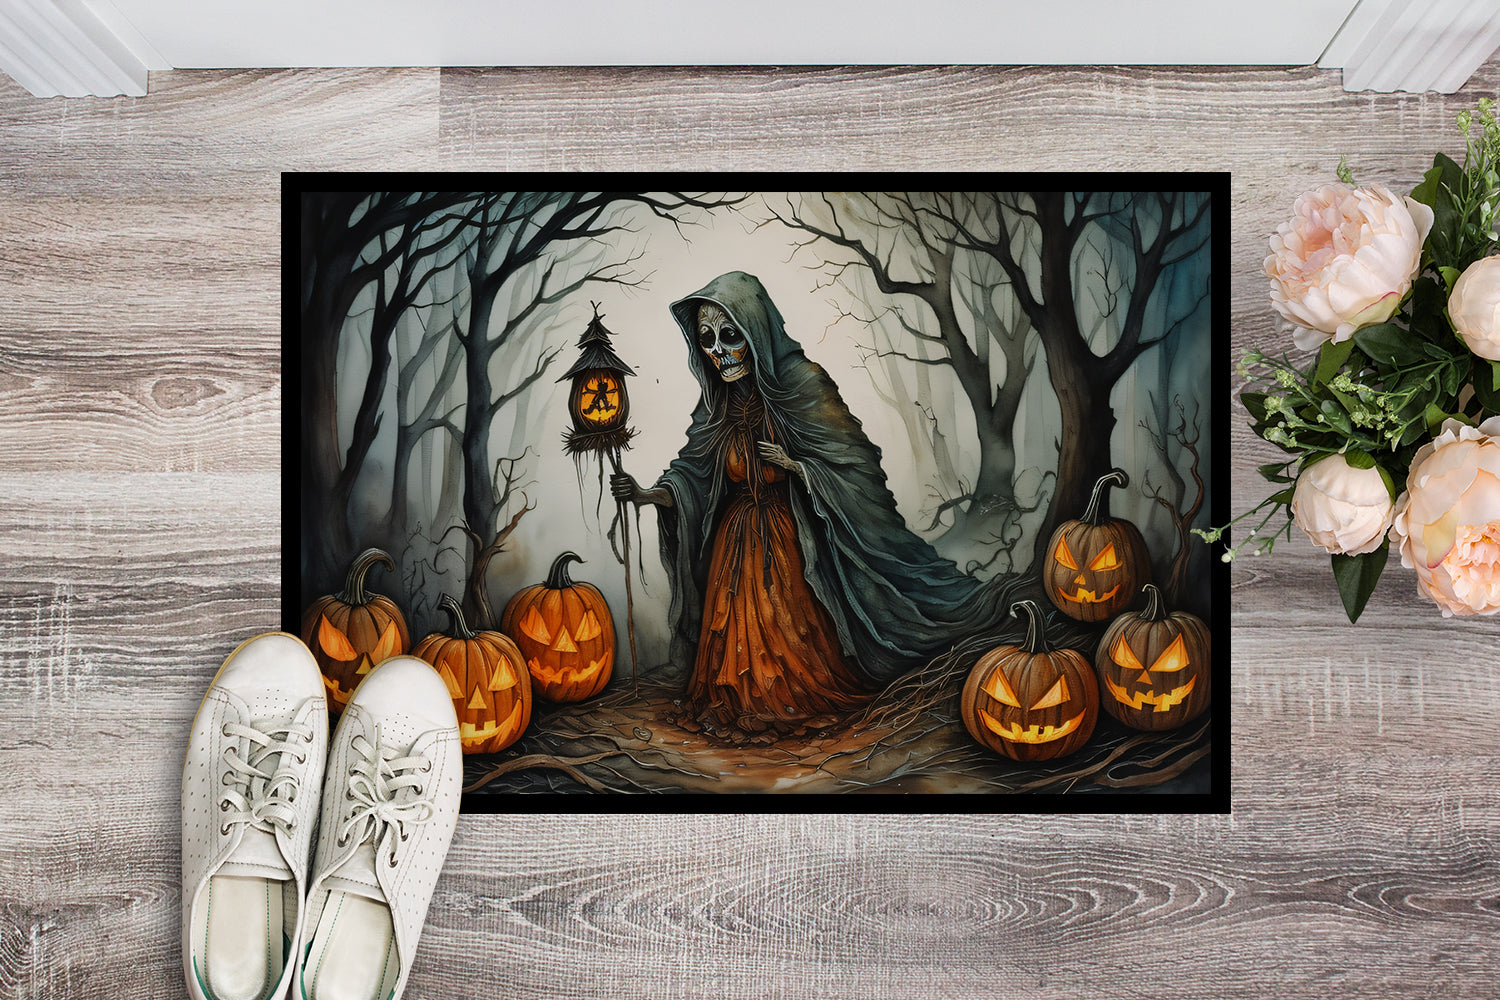 The Weeping Woman Spooky Halloween Doormat 18x27  the-store.com.